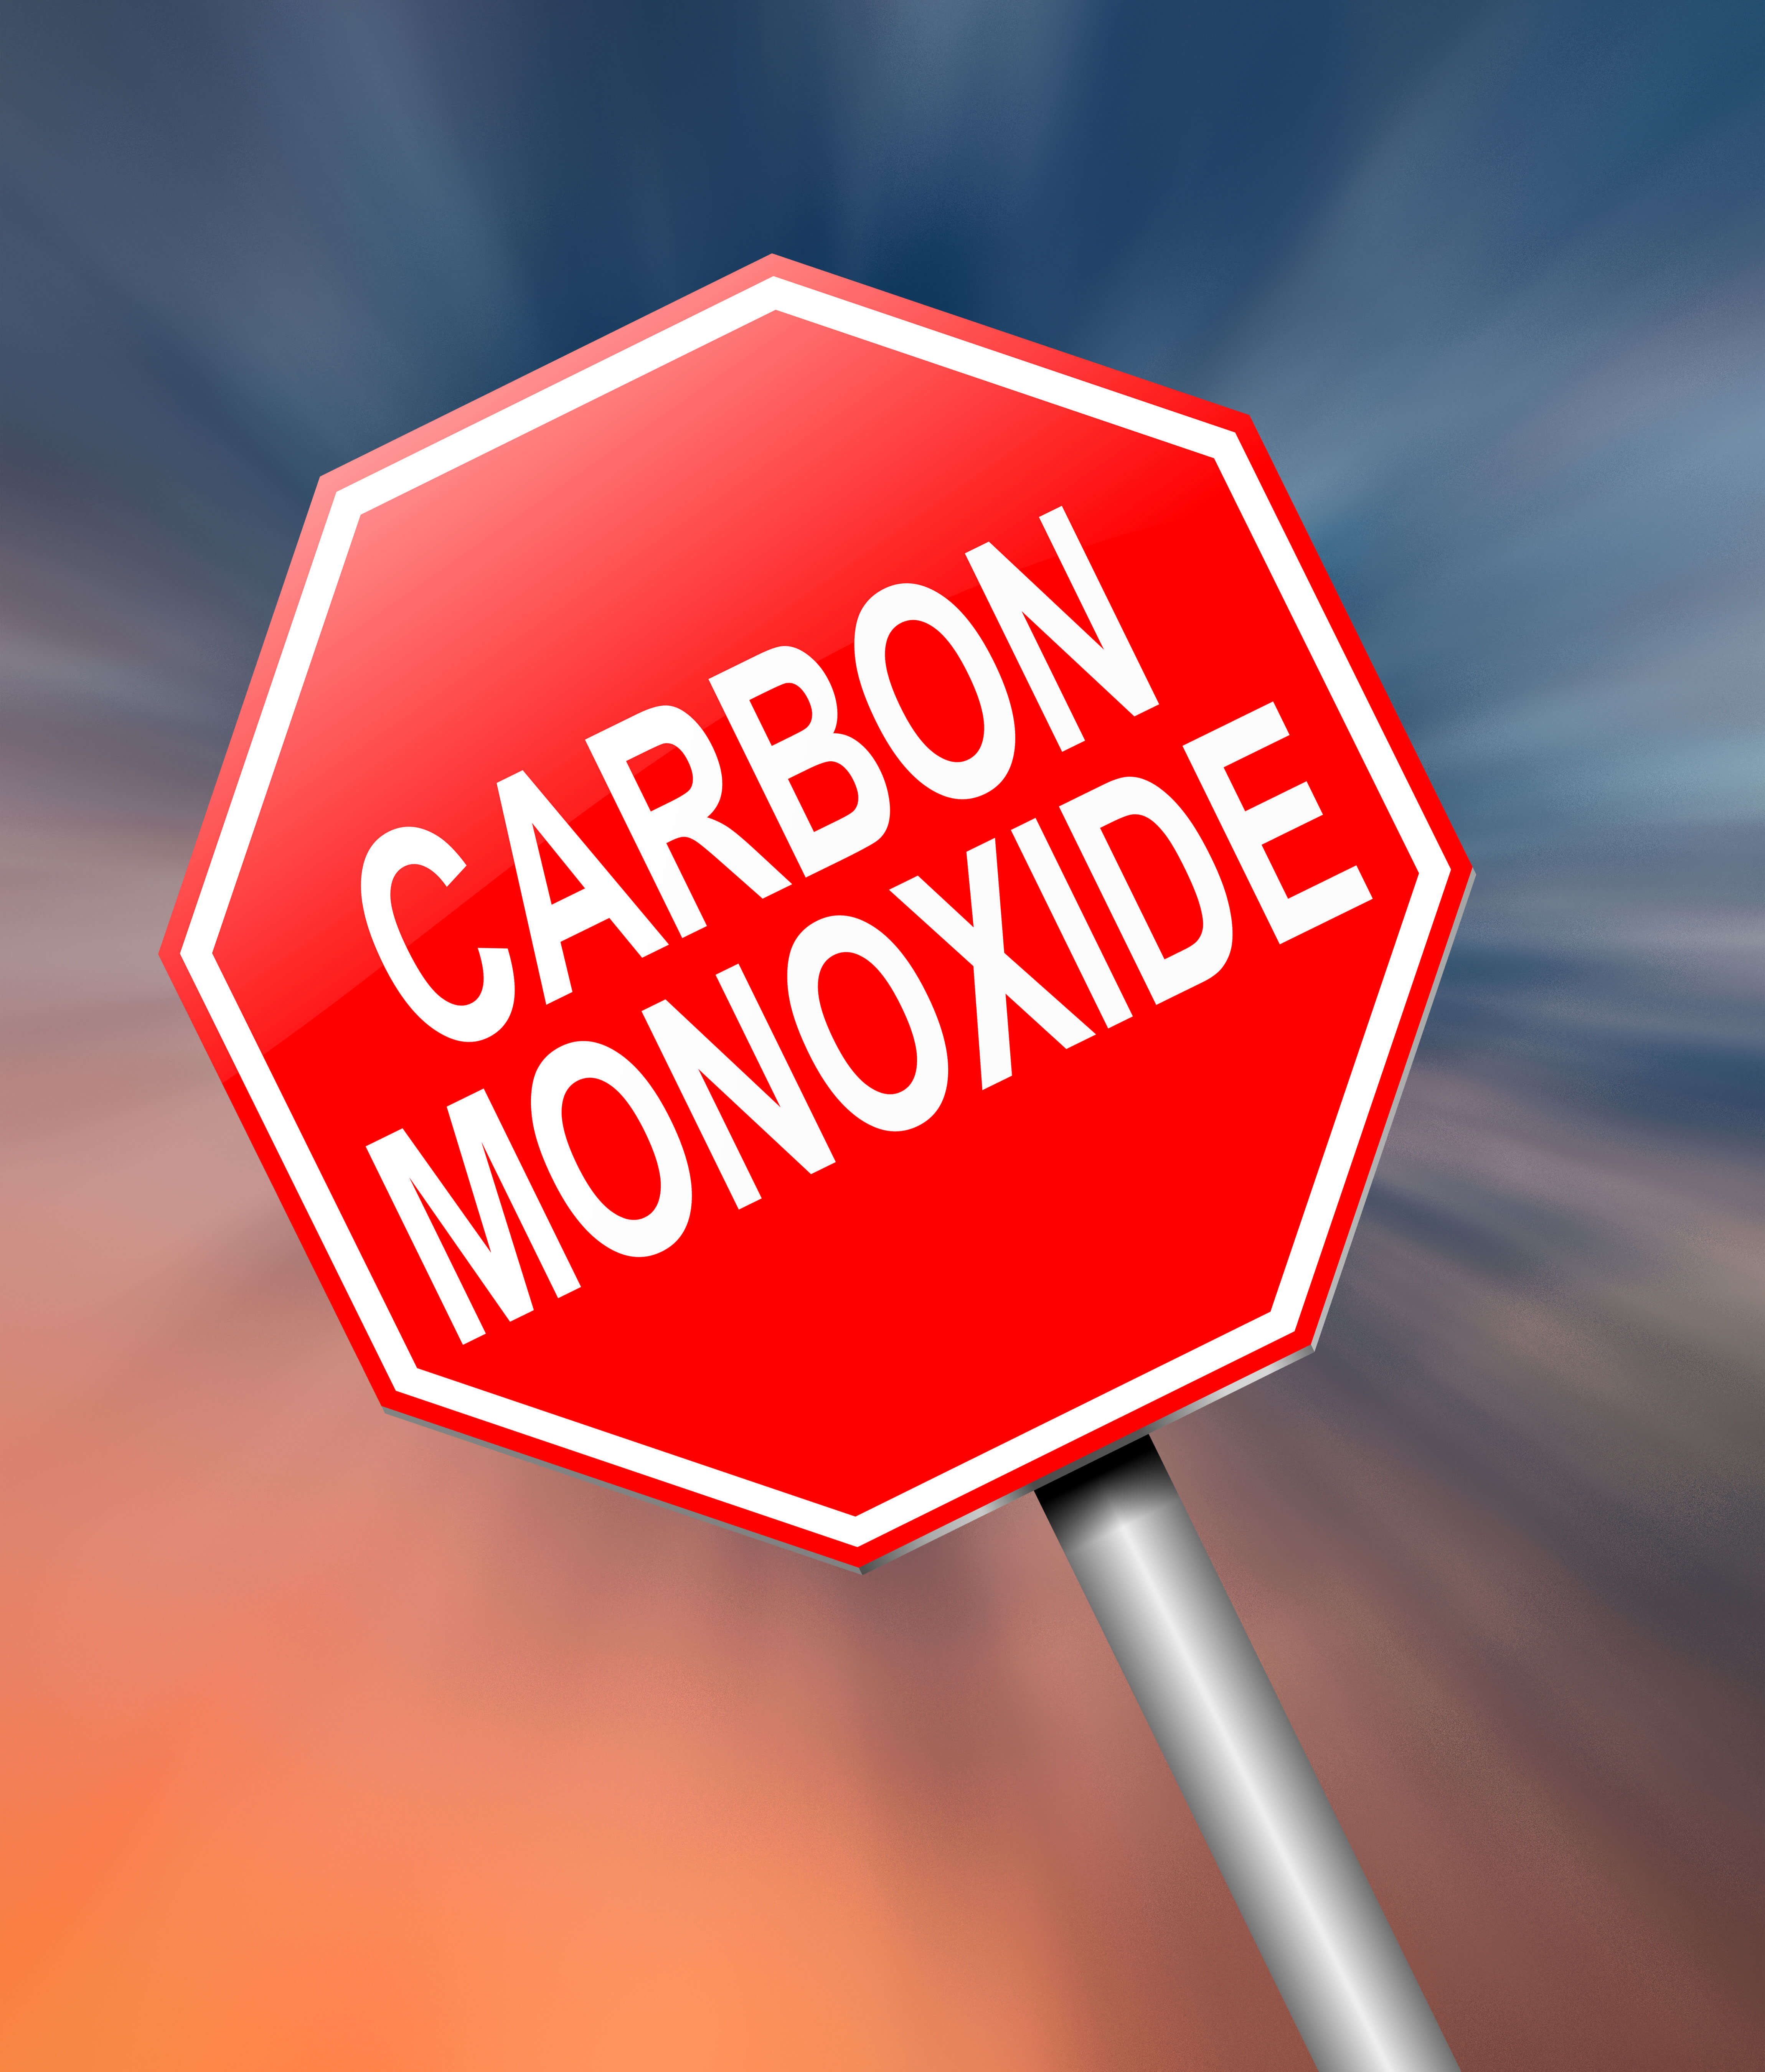 carbon monoxide warning sign